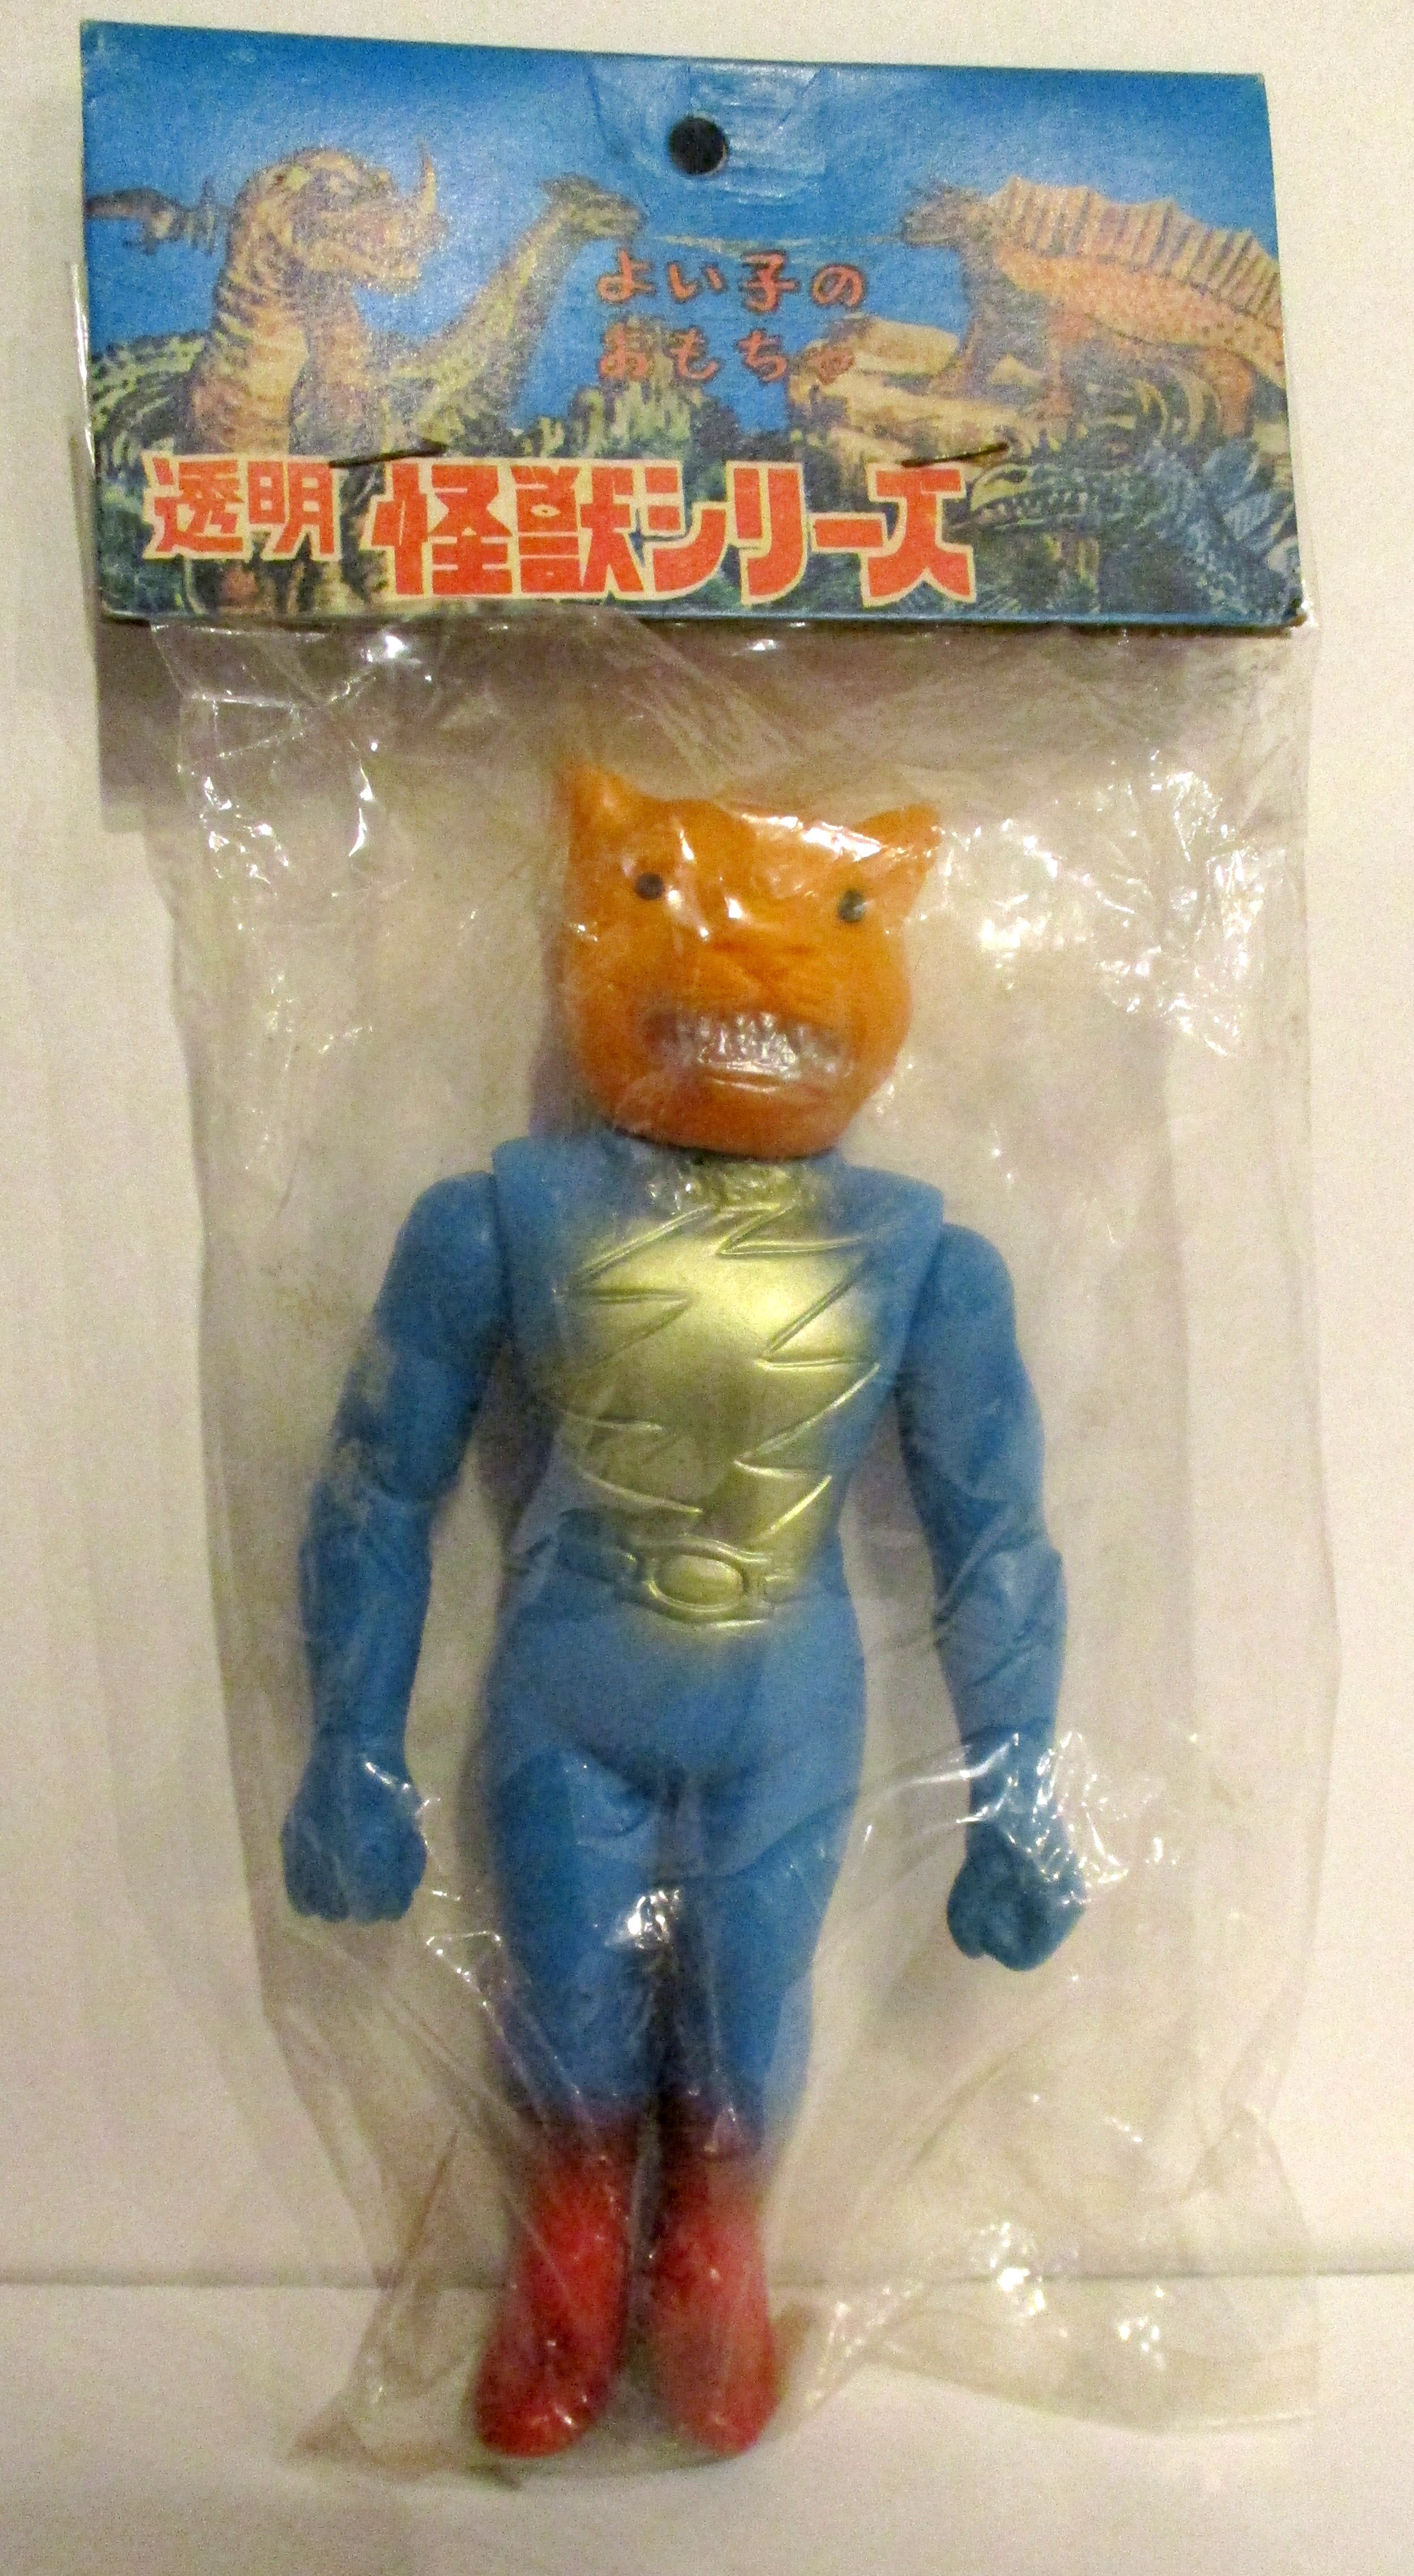 無版権 ソフビ よい子のおもちゃ透明怪獣シリーズ 鉄人タイガーセブン